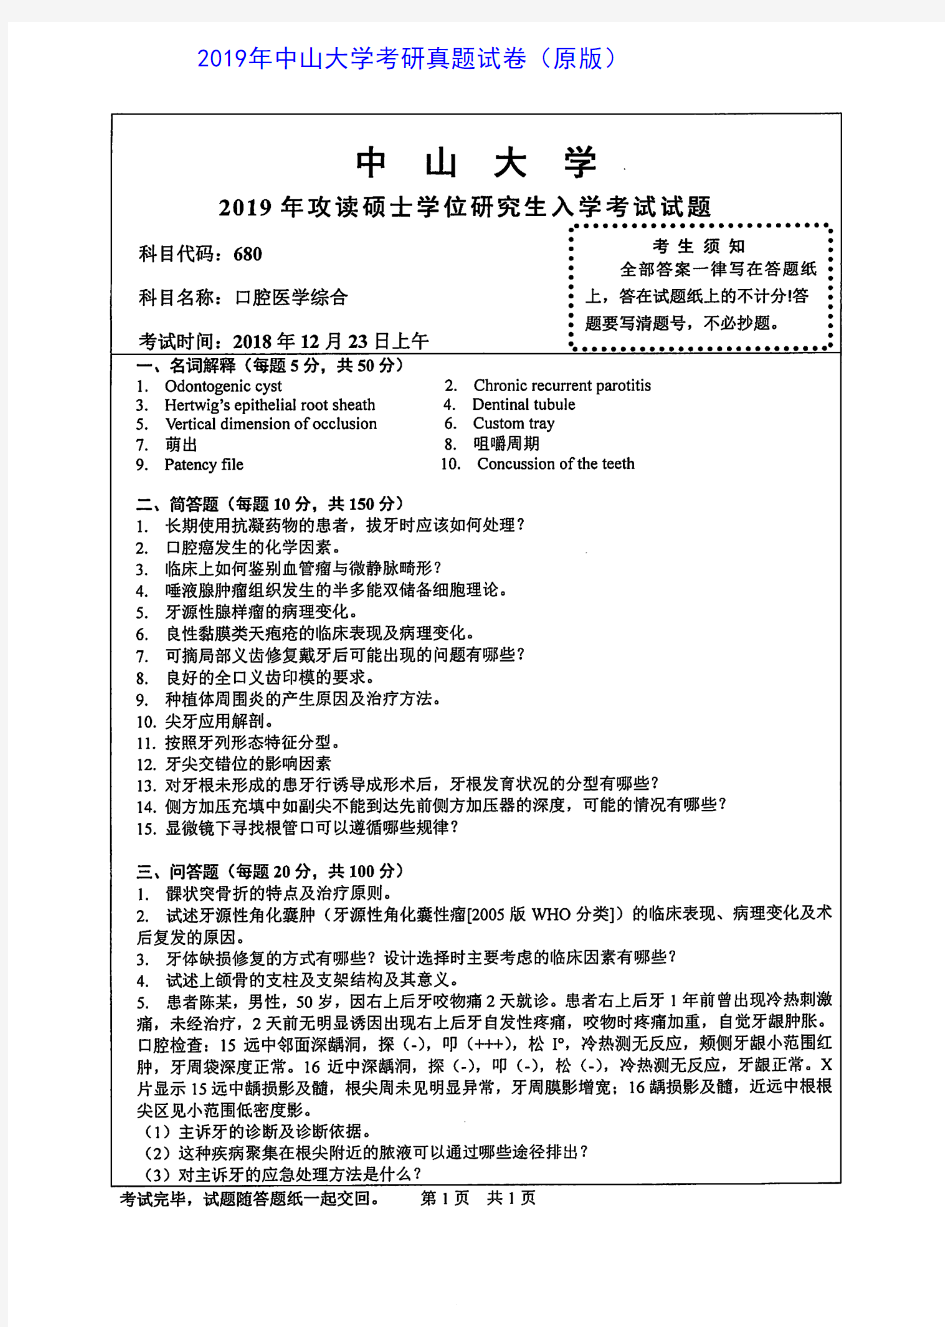 中山大学680口腔医学综合2005-2019年(05-16为352口腔综合)考研真题